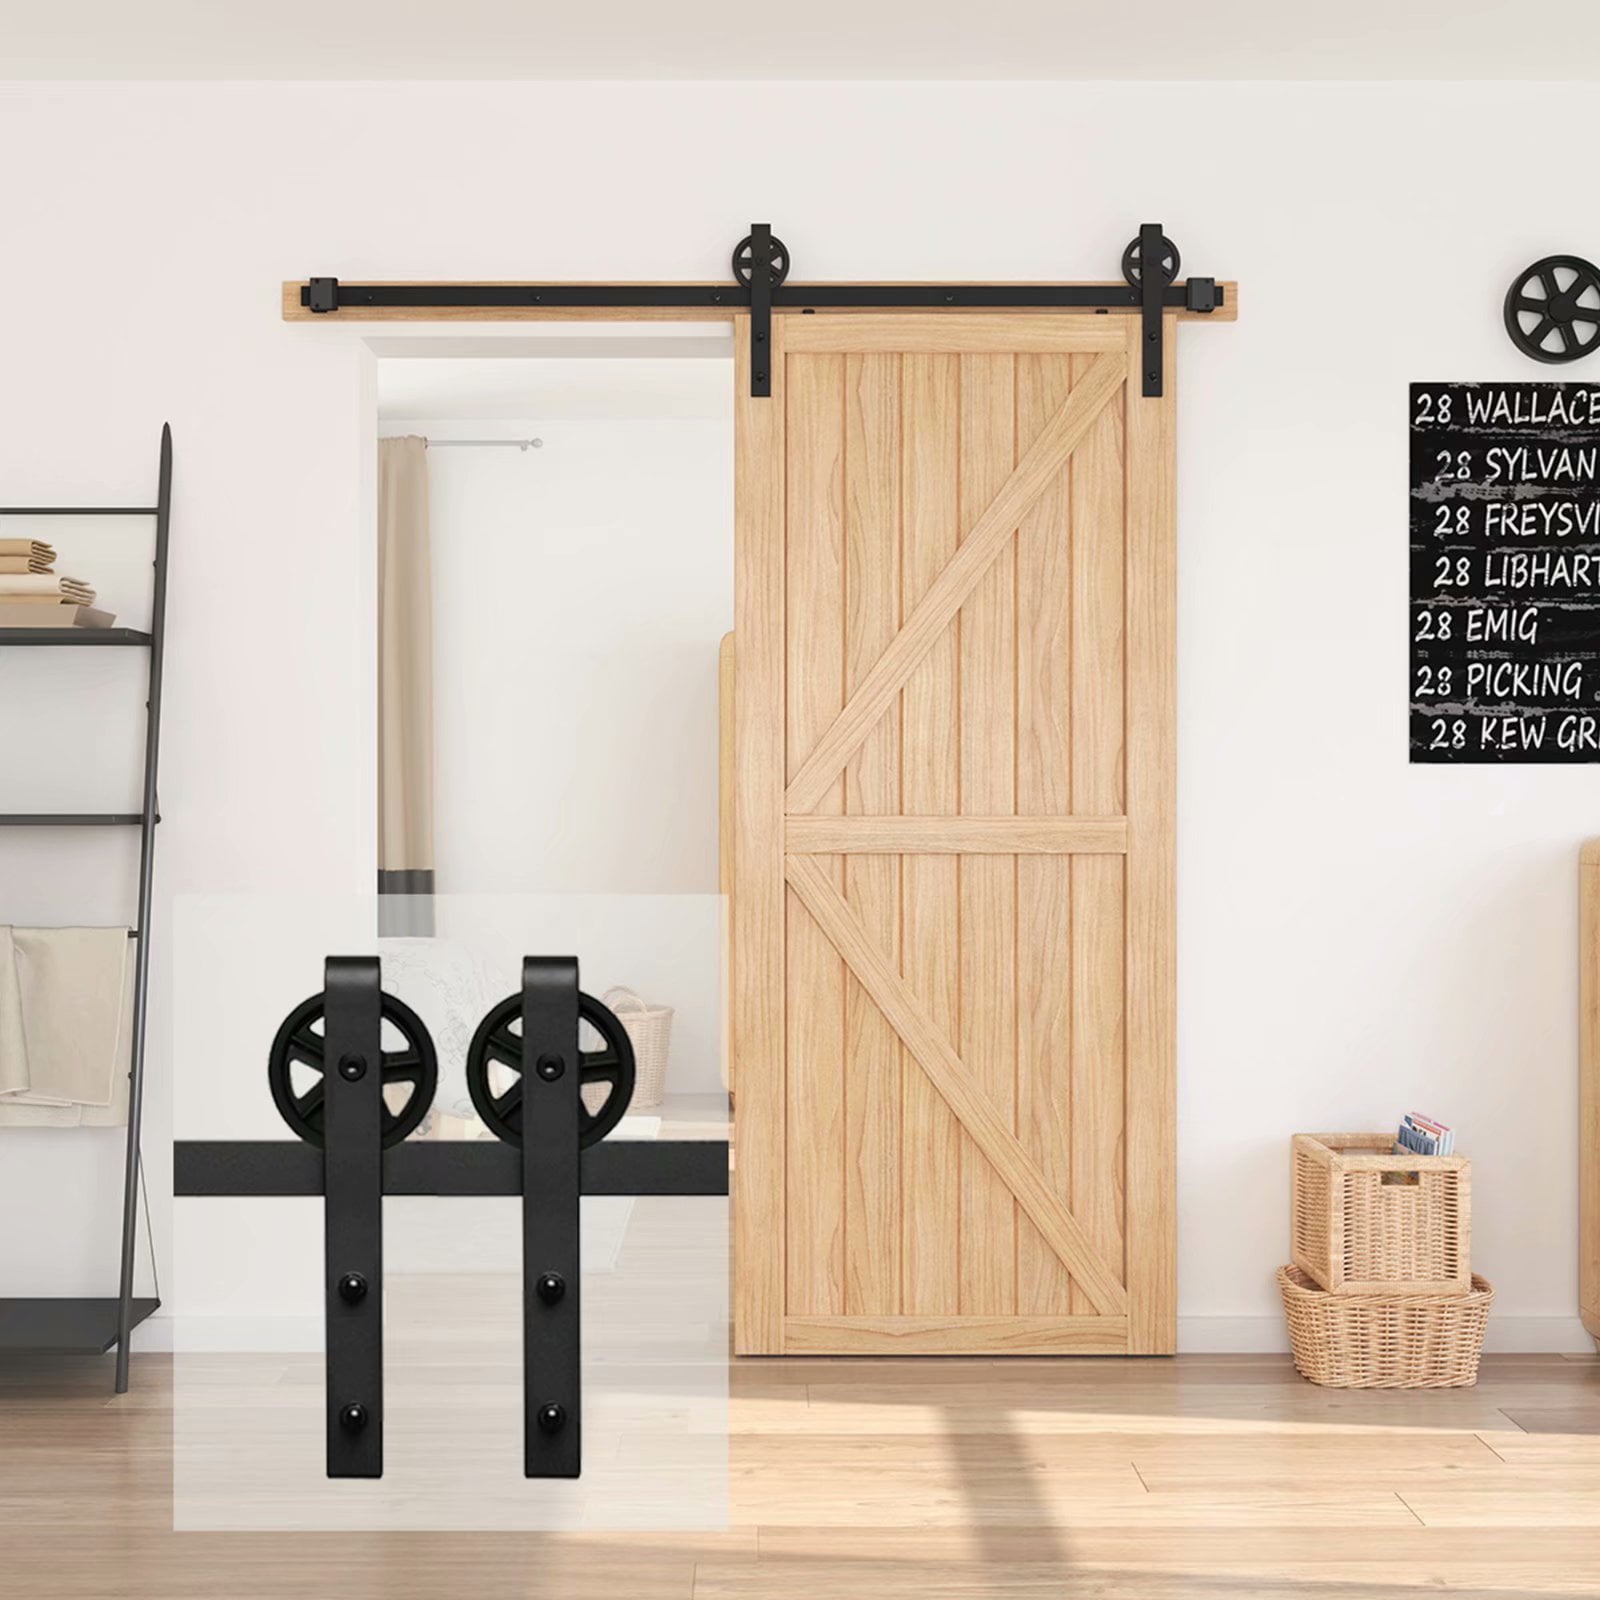 Sliding Door Track Kit,6FT Sliding Barn Door Hardware Roller Track Rail Kit Set for Closet Cabinet Arrow Shape Hangers Black